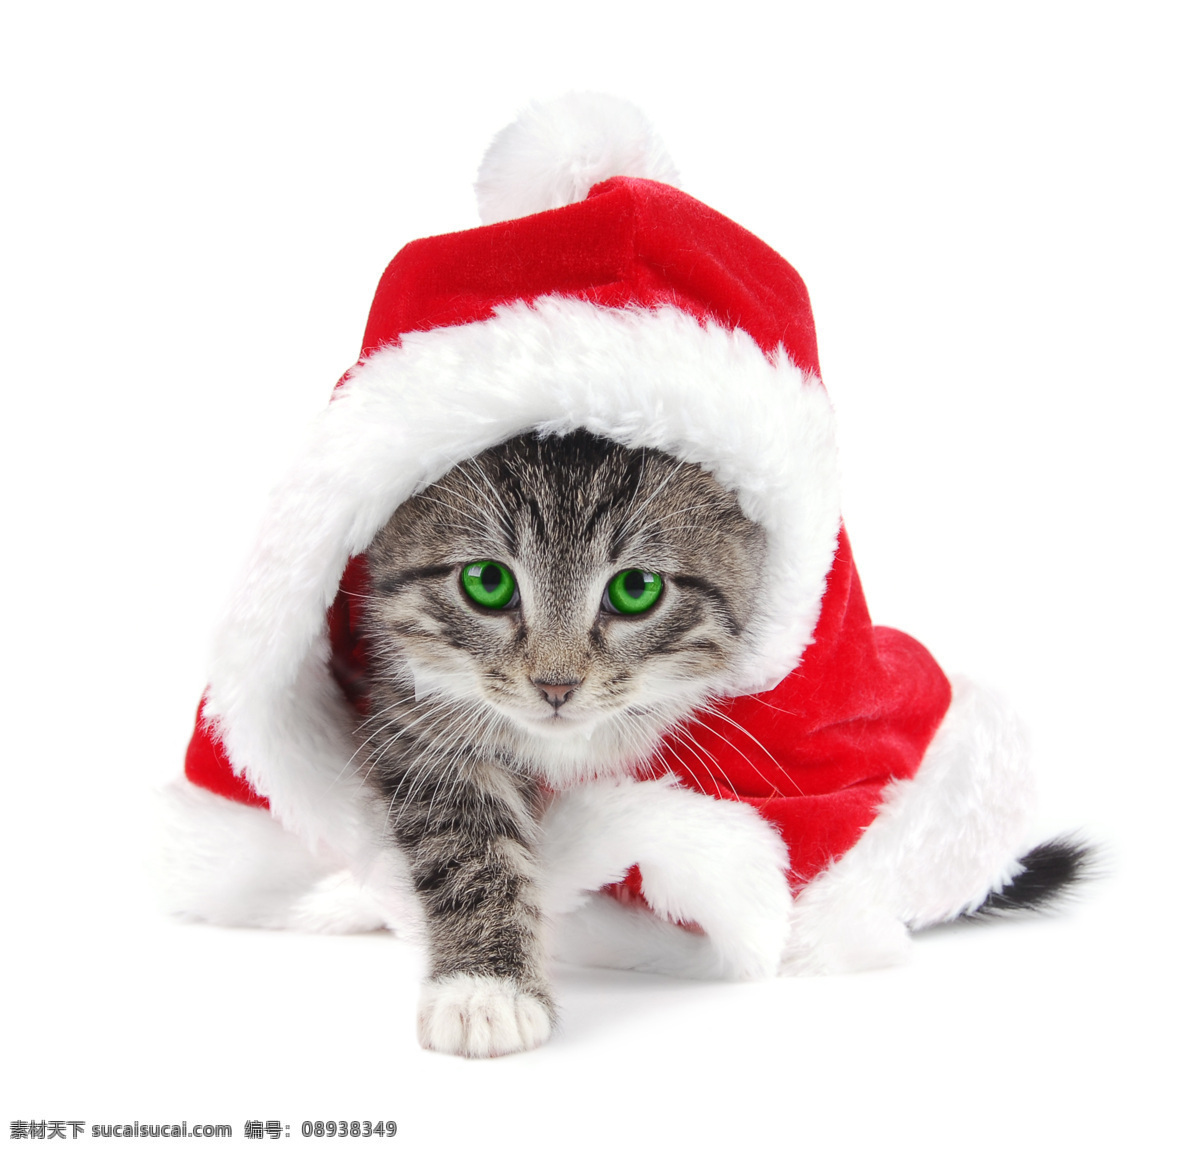 圣诞帽 猫咪免费下载 高清素材 公仔 节日礼物 节日素材 猫咪 设计素材 圣诞树 其他节日